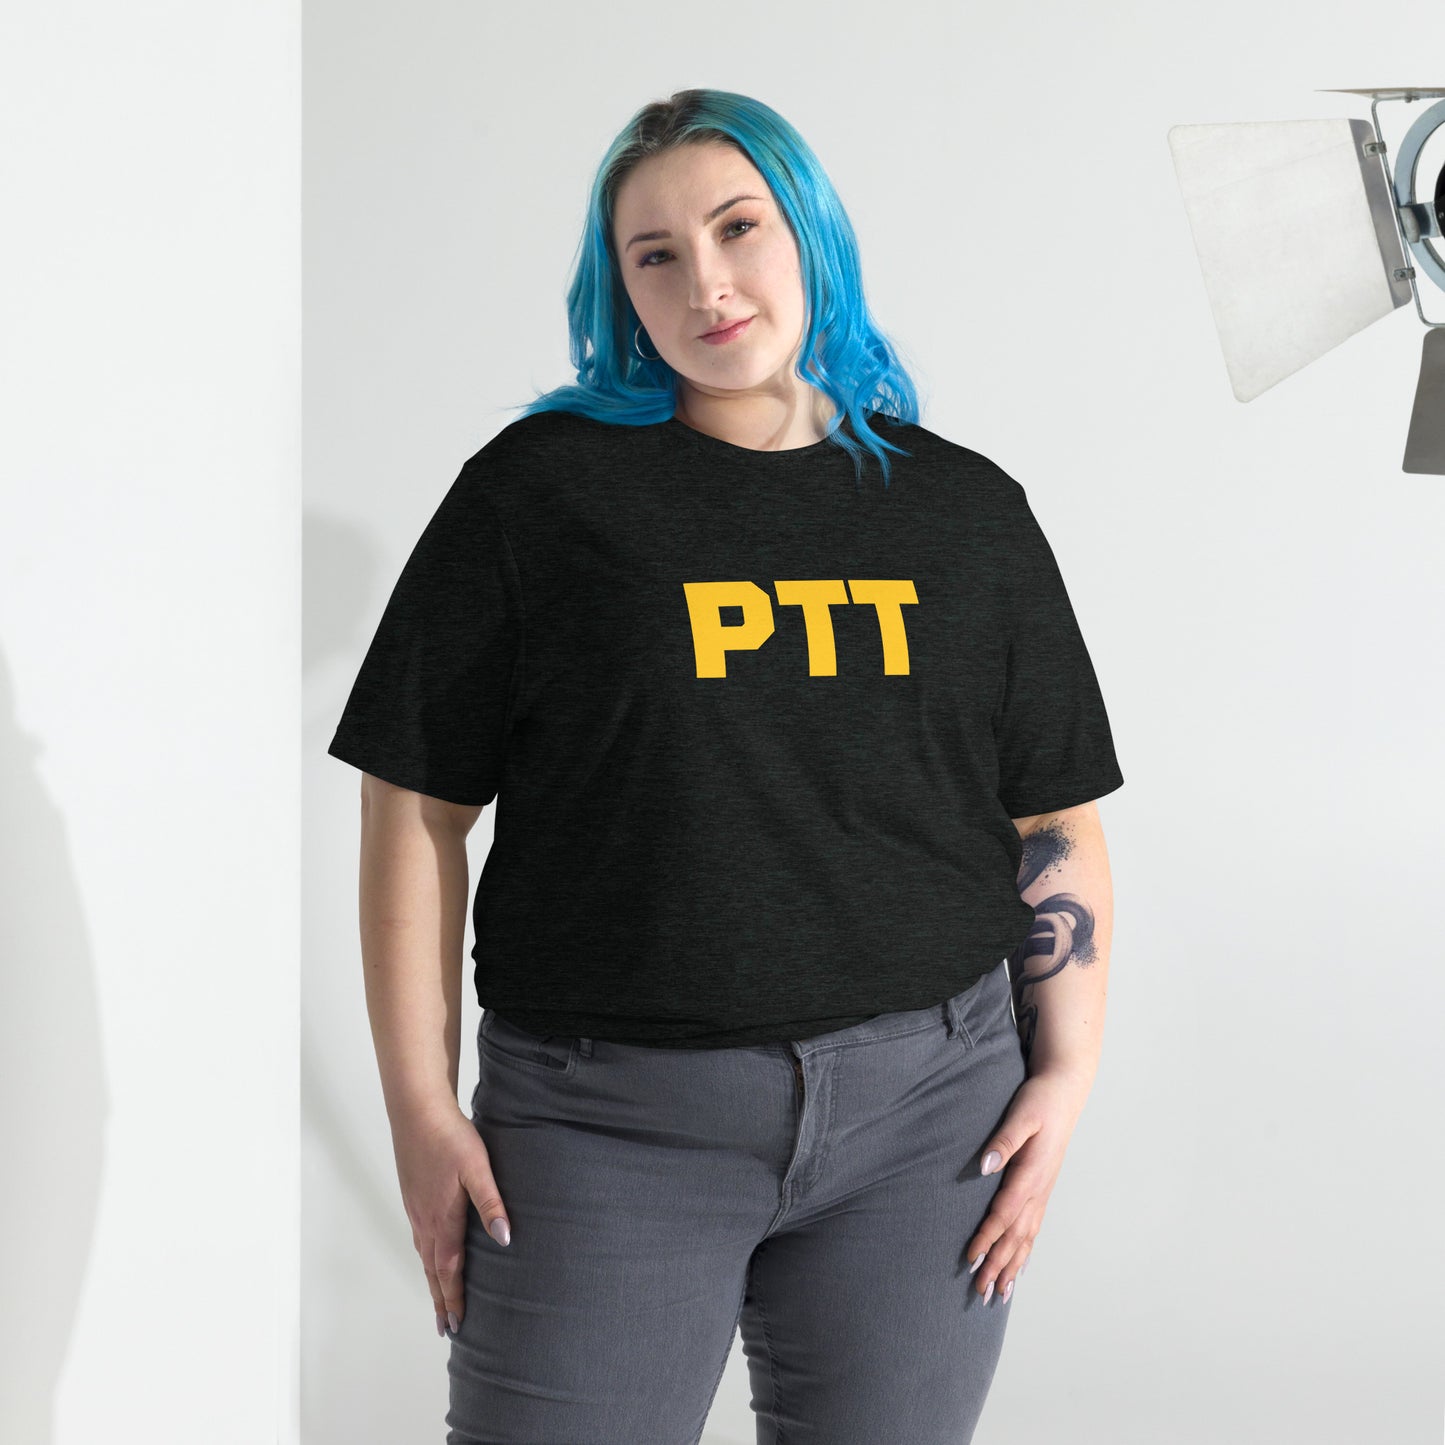 PTT Pittsburgh Strong Short Sleeve Tri-Blend T-Shirt